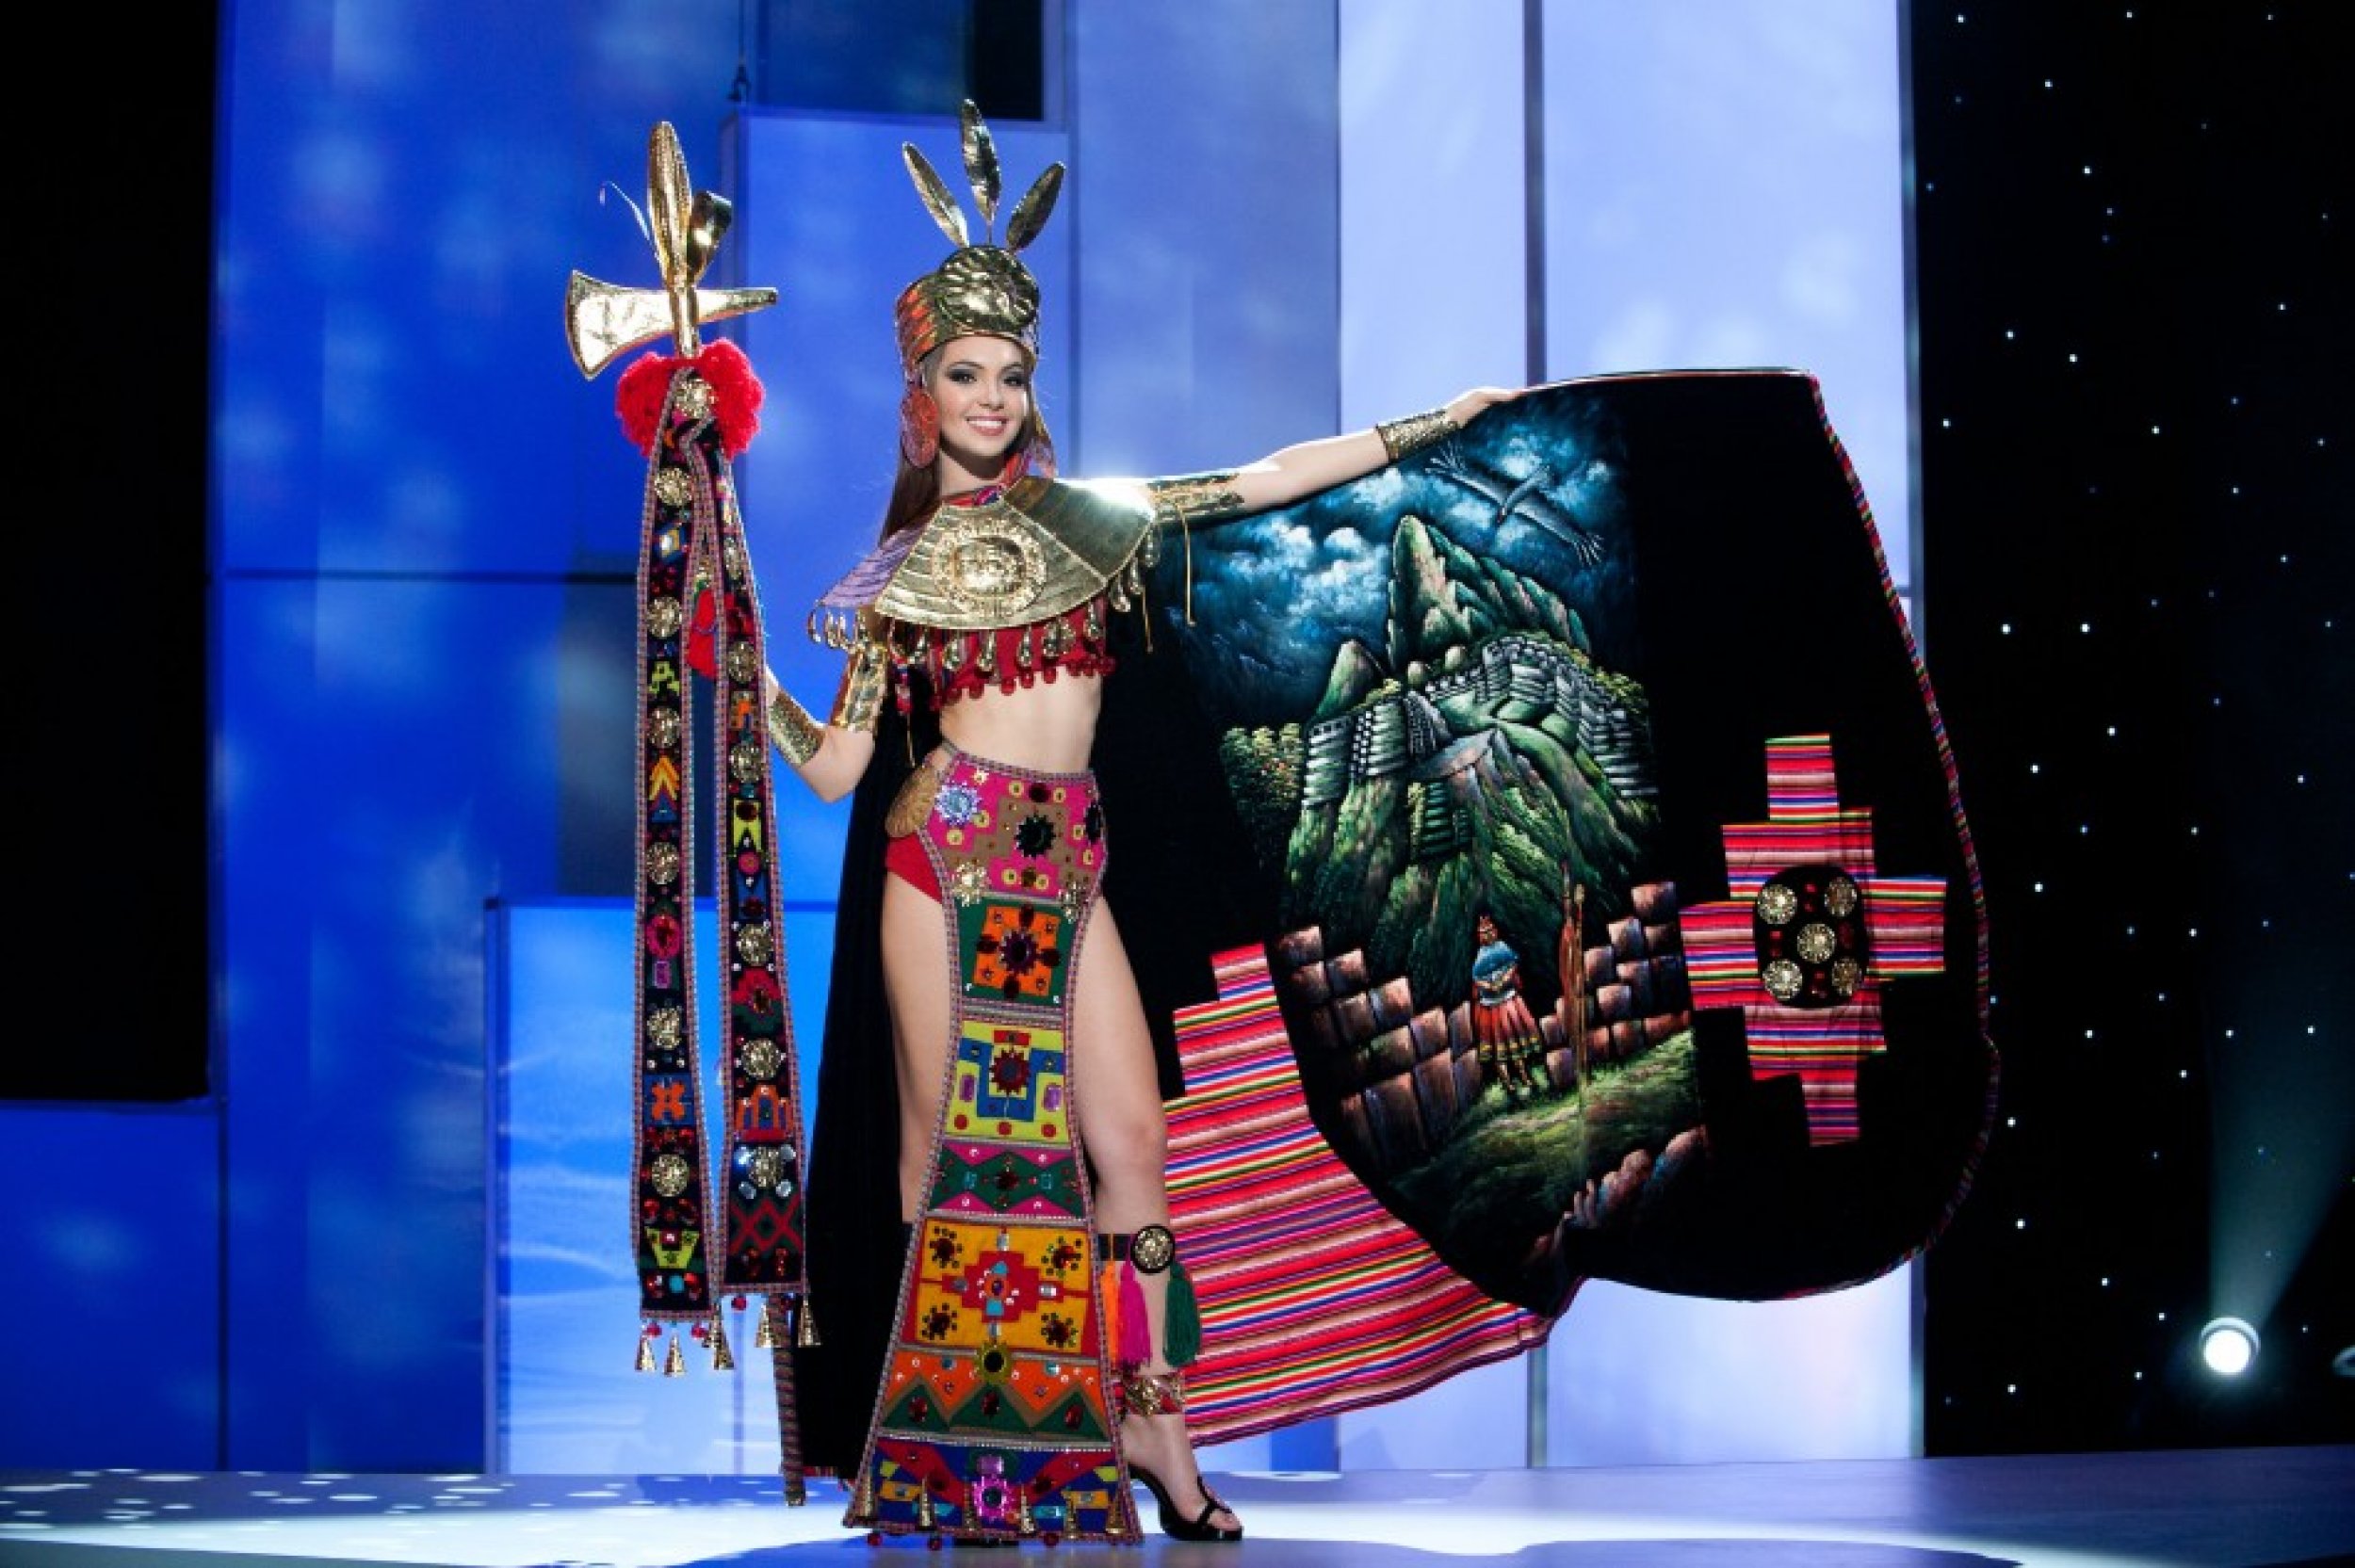 Miss Peru 2011